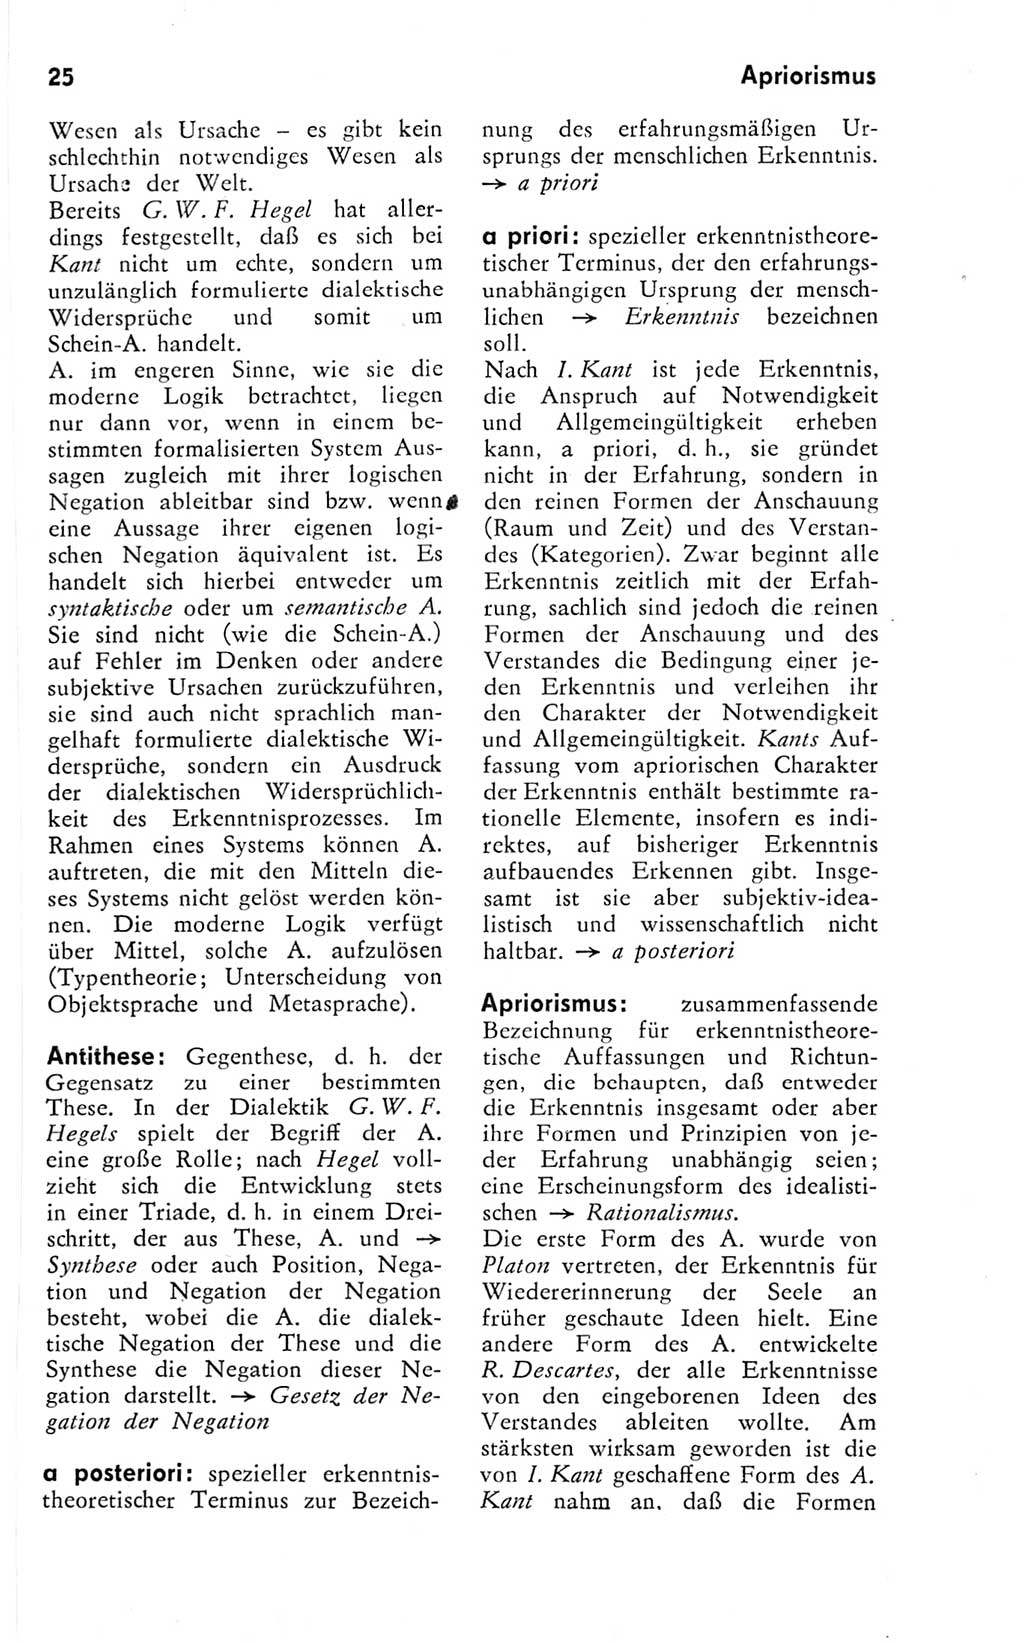 Kleines Wörterbuch der marxistisch-leninistischen Philosophie [Deutsche Demokratische Republik (DDR)] 1974, Seite 25 (Kl. Wb. ML Phil. DDR 1974, S. 25)